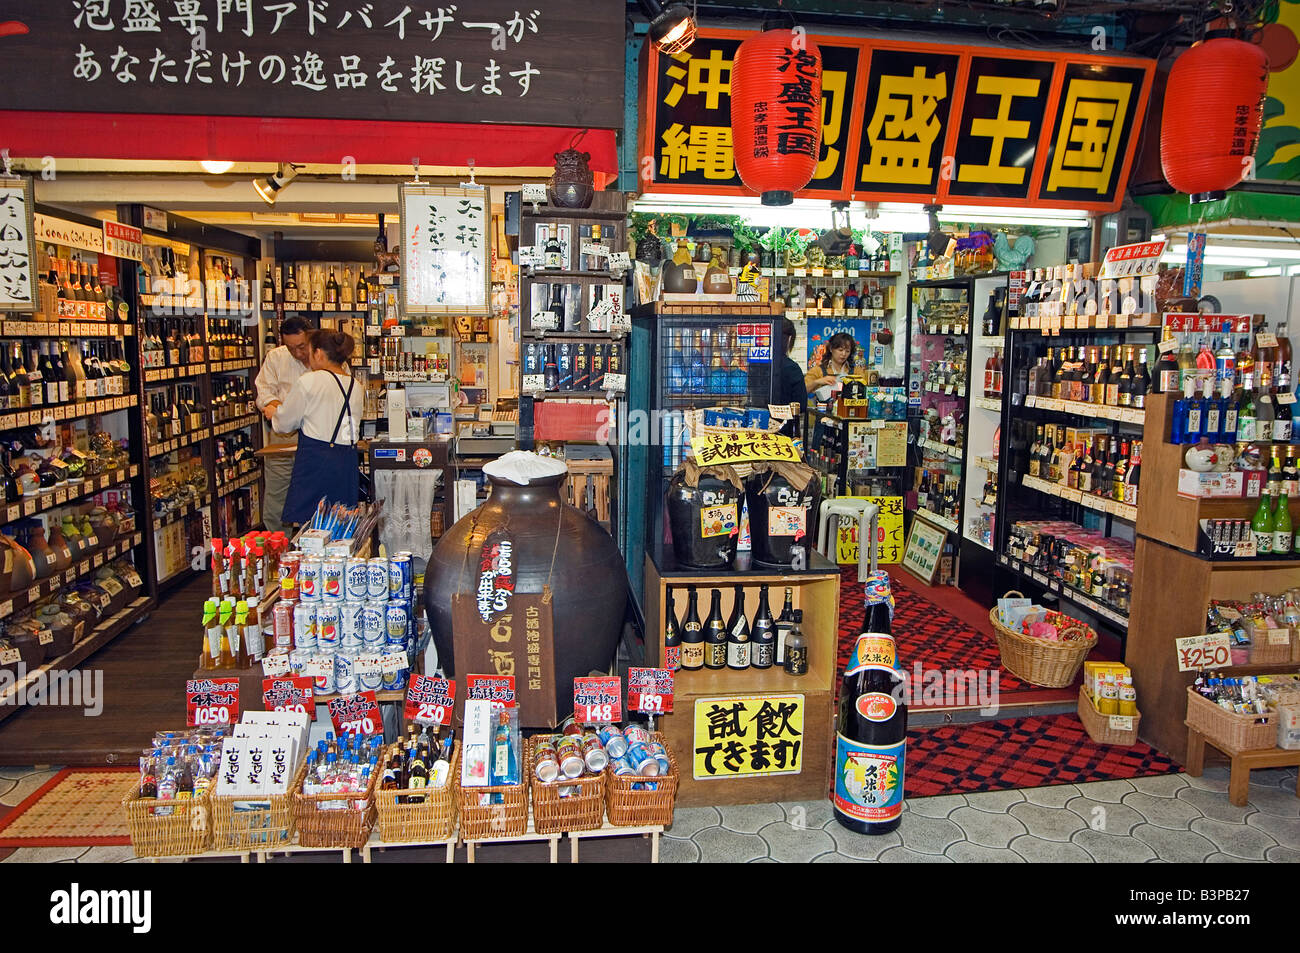 Giappone, Prefettura di Okinawa. Ichiba dori mercato, Motivi in stallo Foto Stock